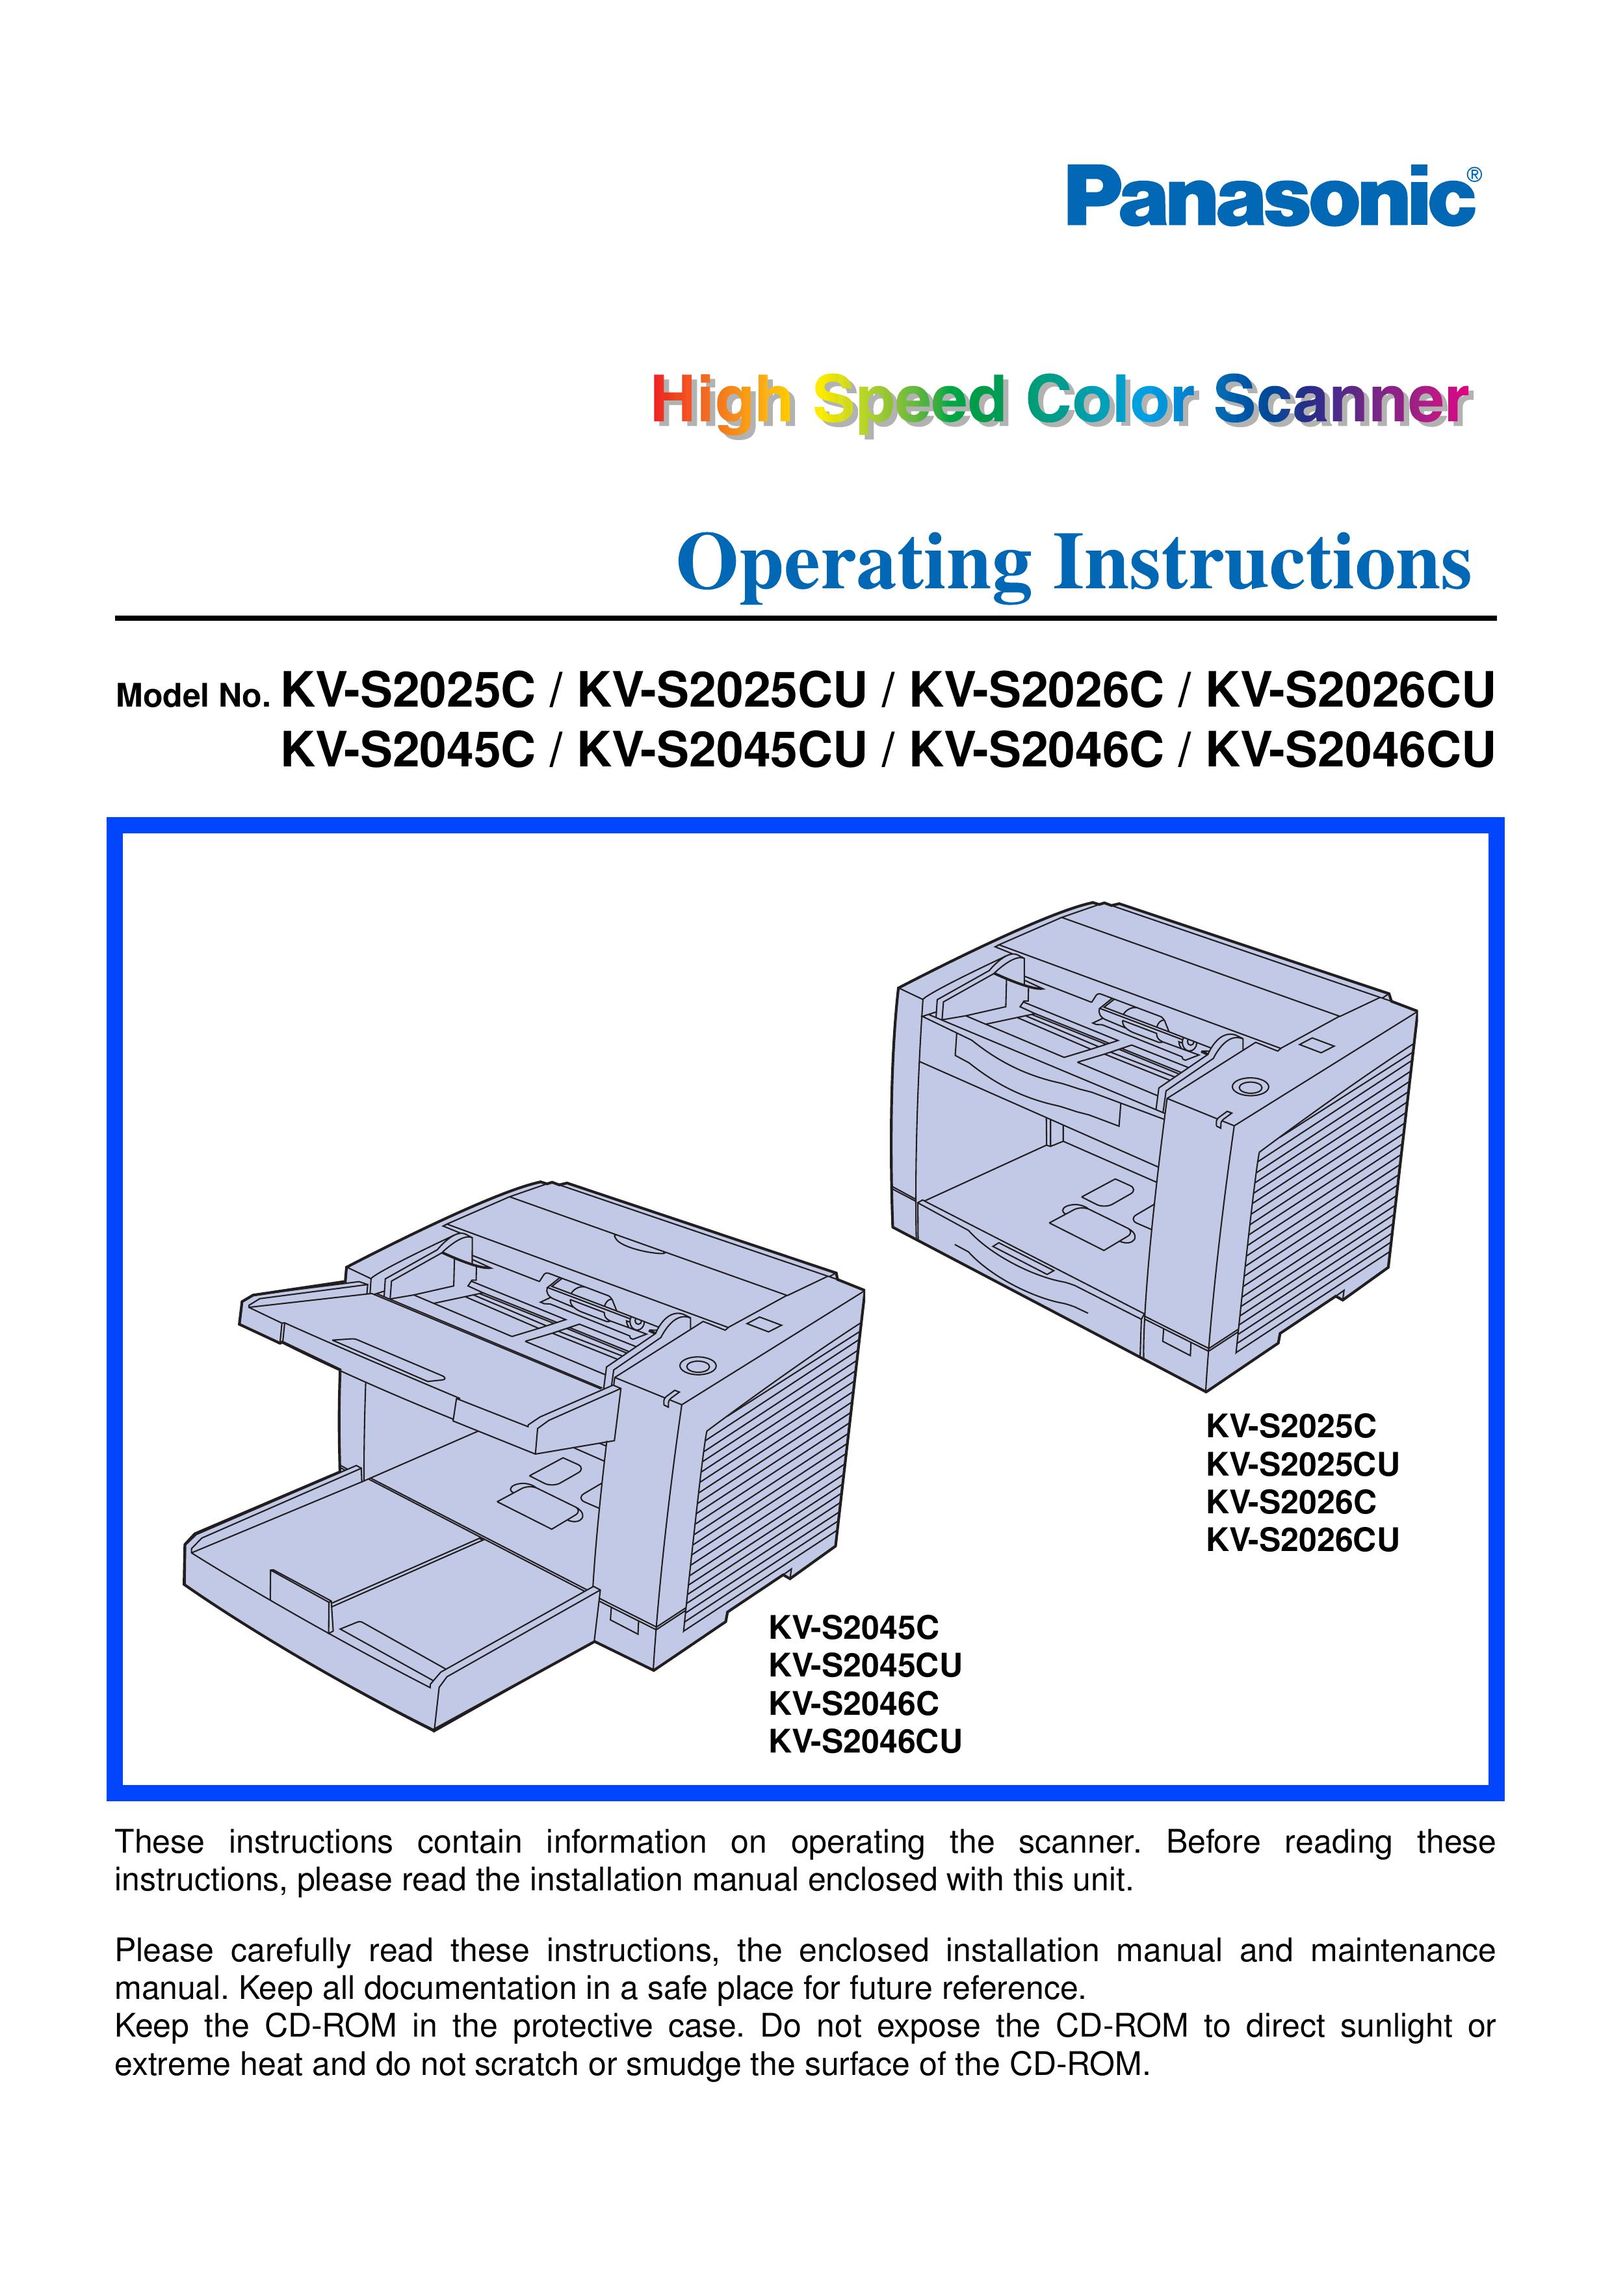 Panasonic KV-S2026CU Scanner User Manual